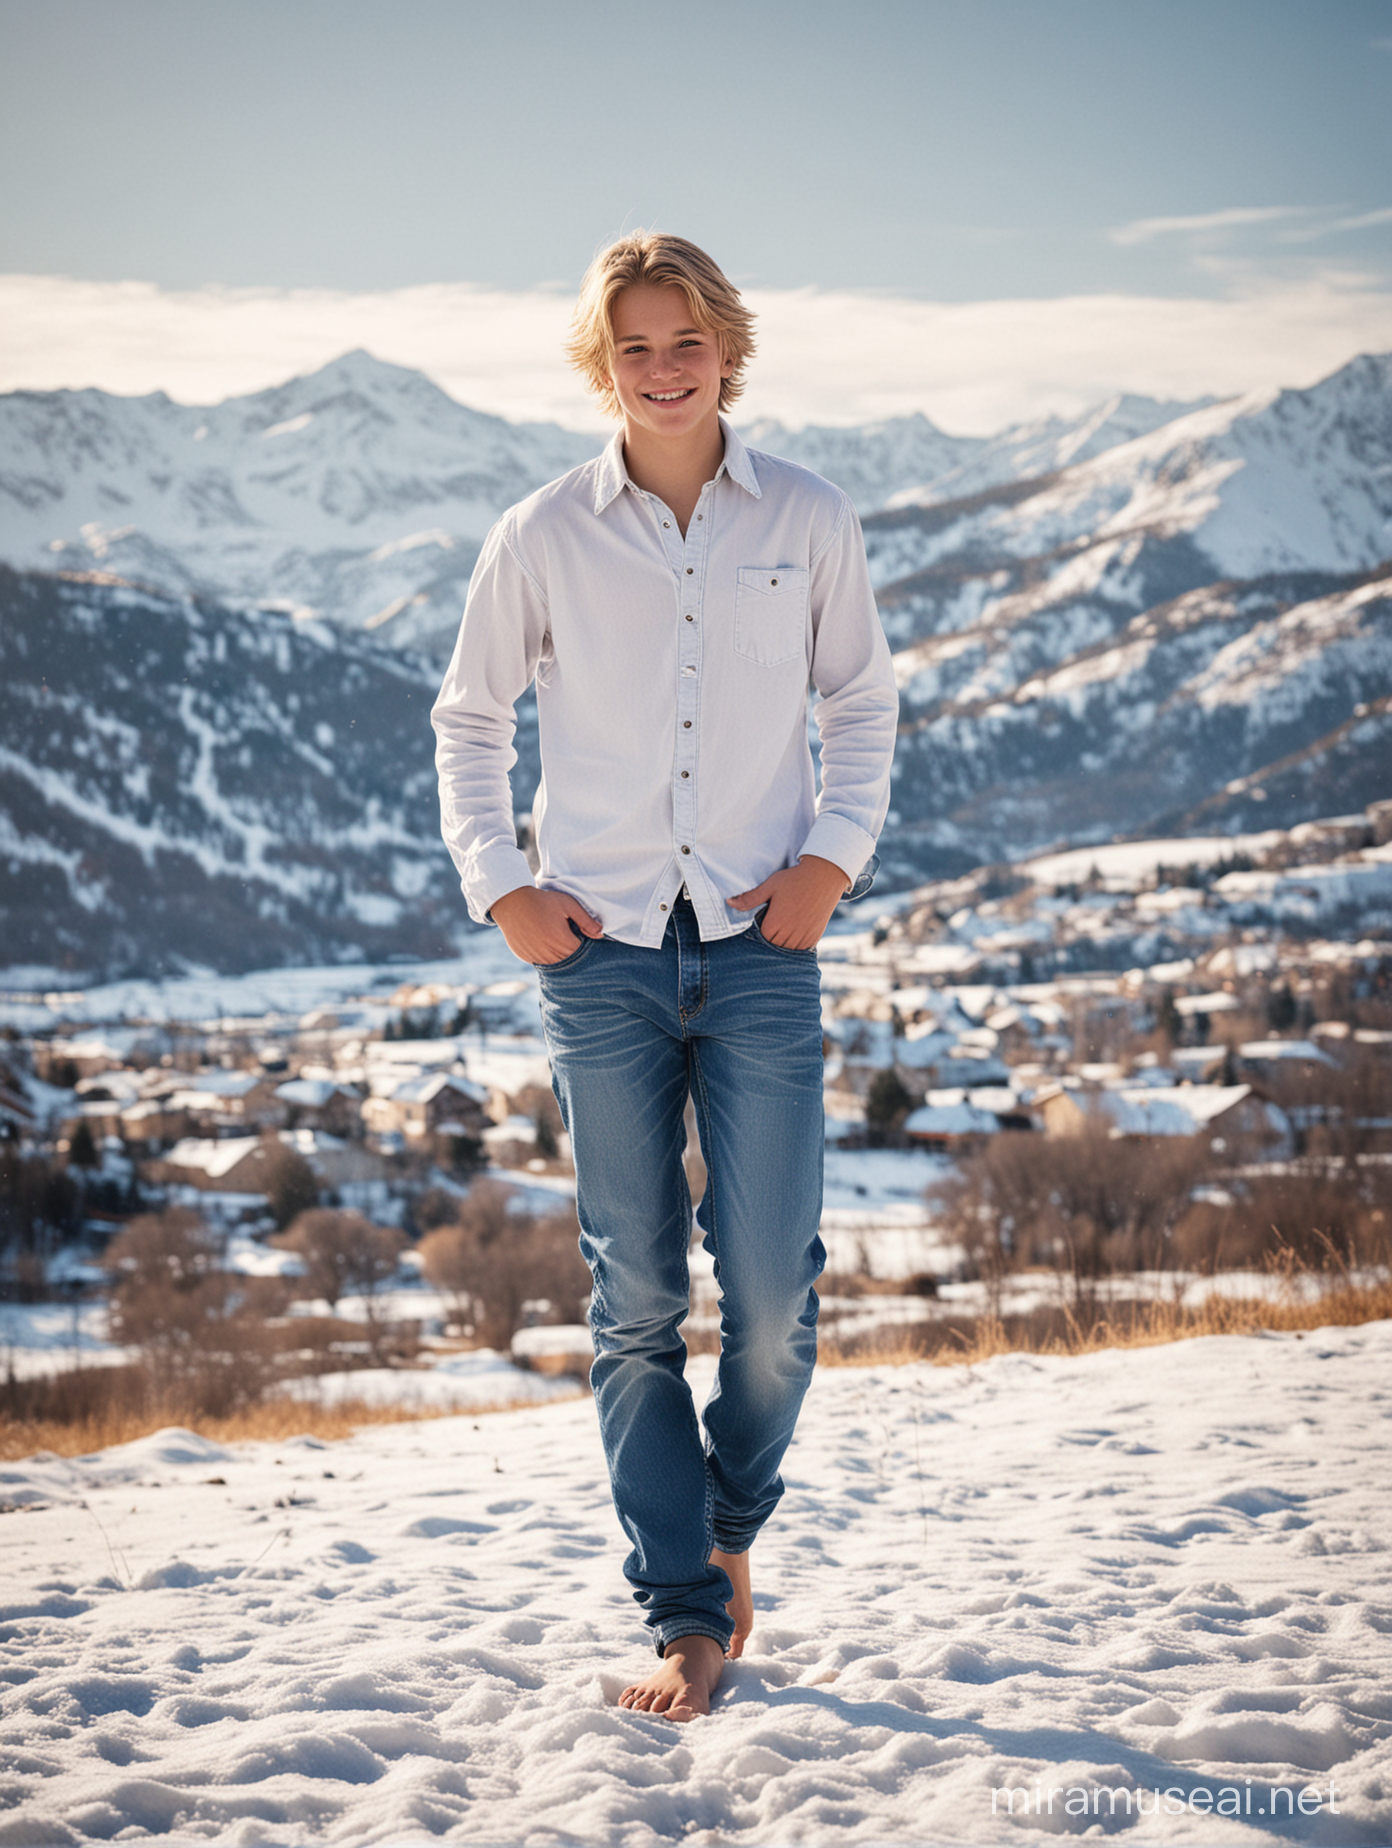 Босиком молодой Мальчик босиком 16 лет русые волосы улыбка босые ноги джинсы босиком рубашка зимой босиком снег задний план горы стиль реализм